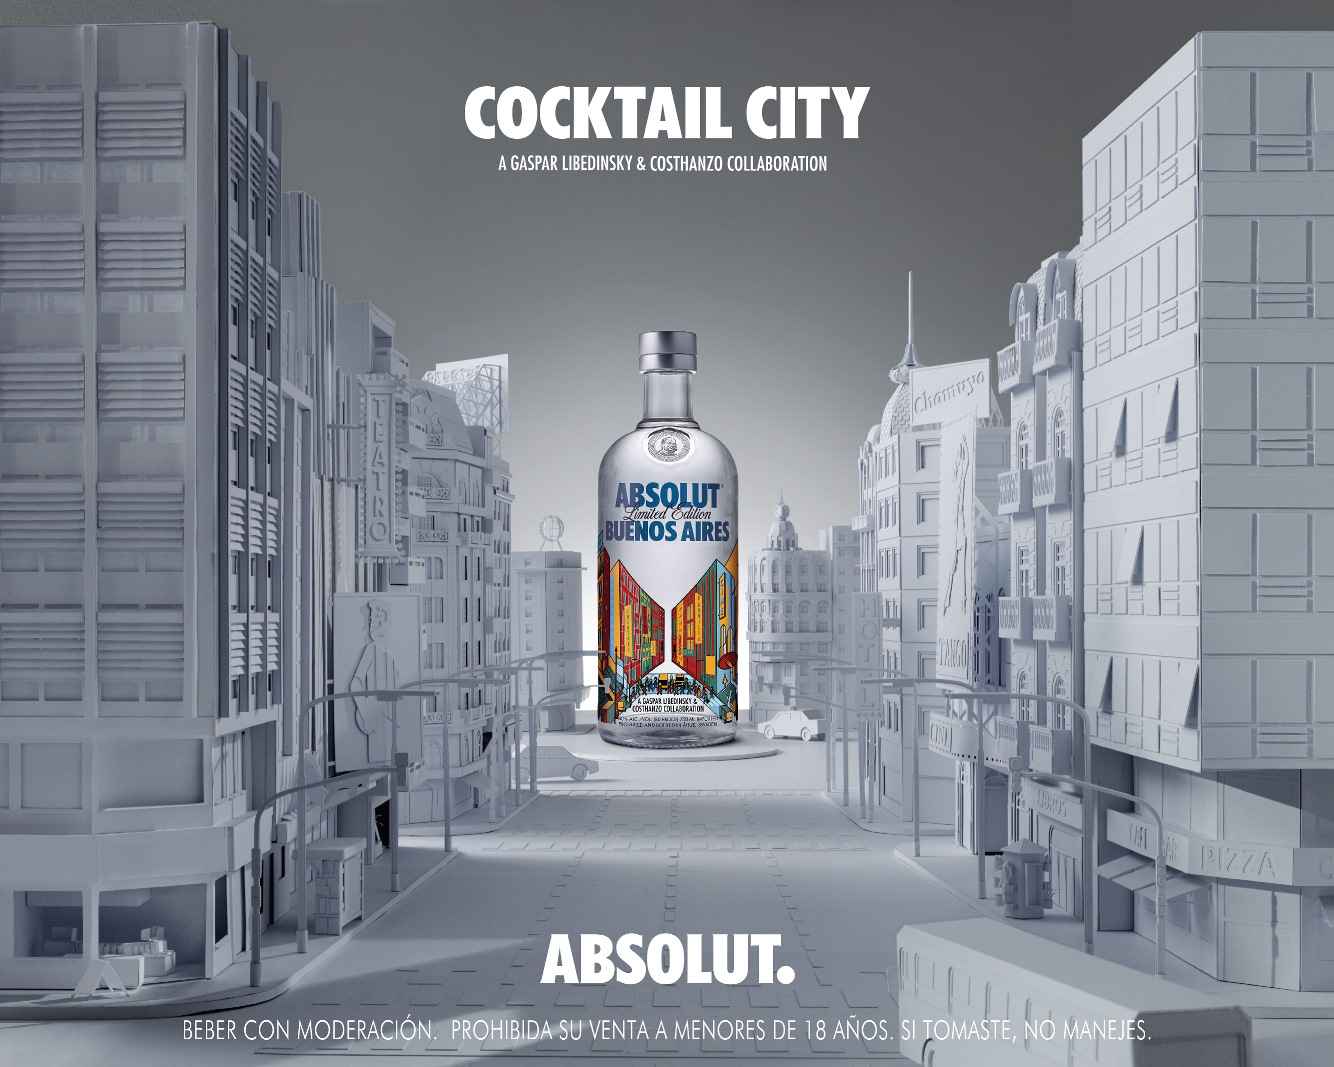 Portada de WTF? Agency presenta "Cocktail City" la primera campaña de Absolut Vodka desarrollada íntegramente en Argentina